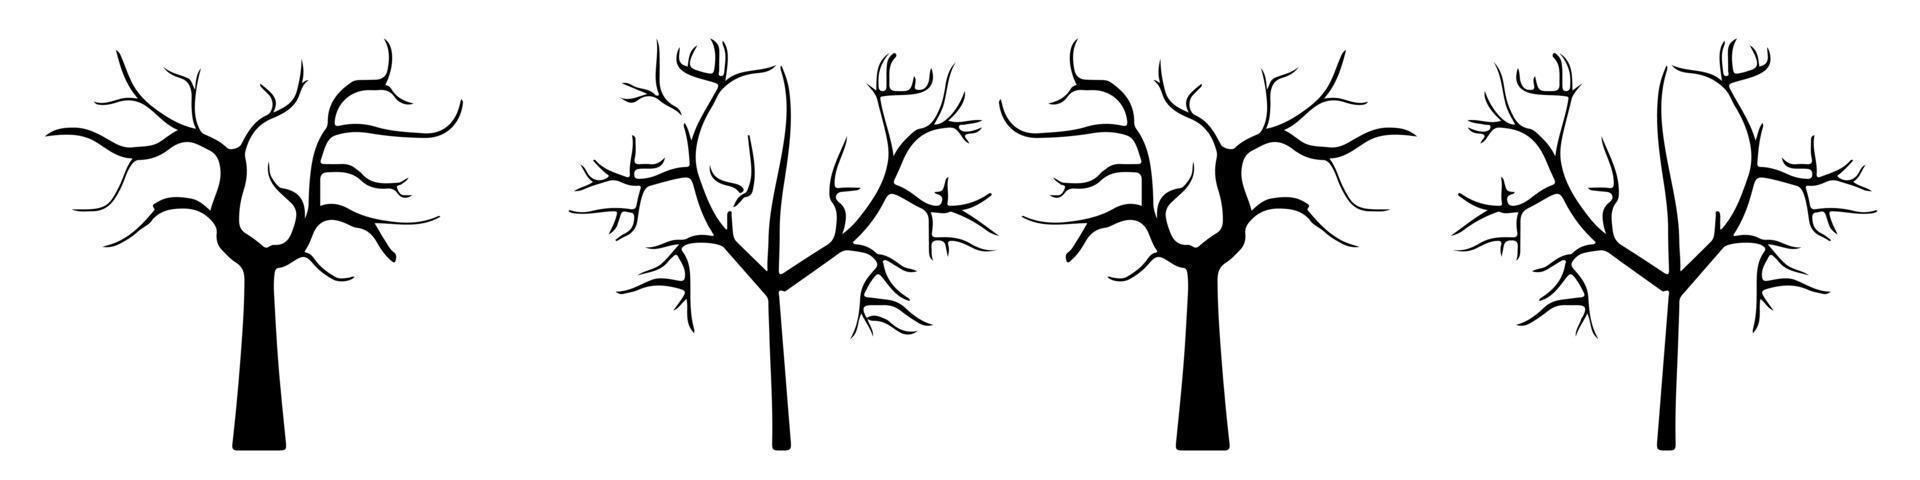 árvore nua silhueta arte vetor design planta forma nua para sites, impressão e outros.